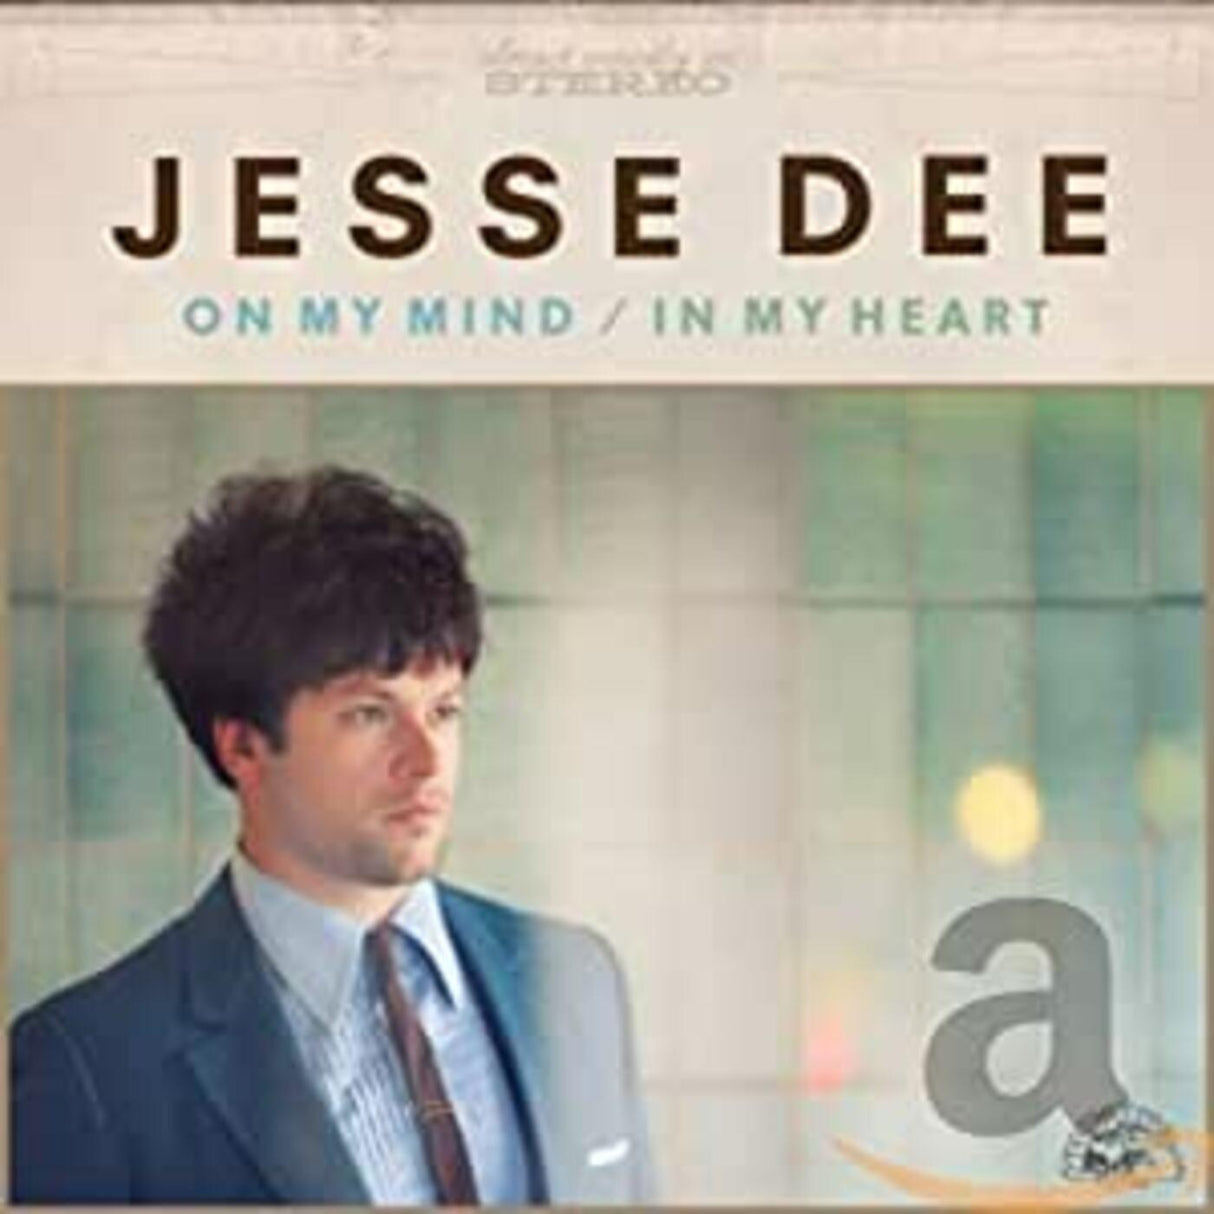 Jesse Dee - On My Mind / In My Heart [CD]